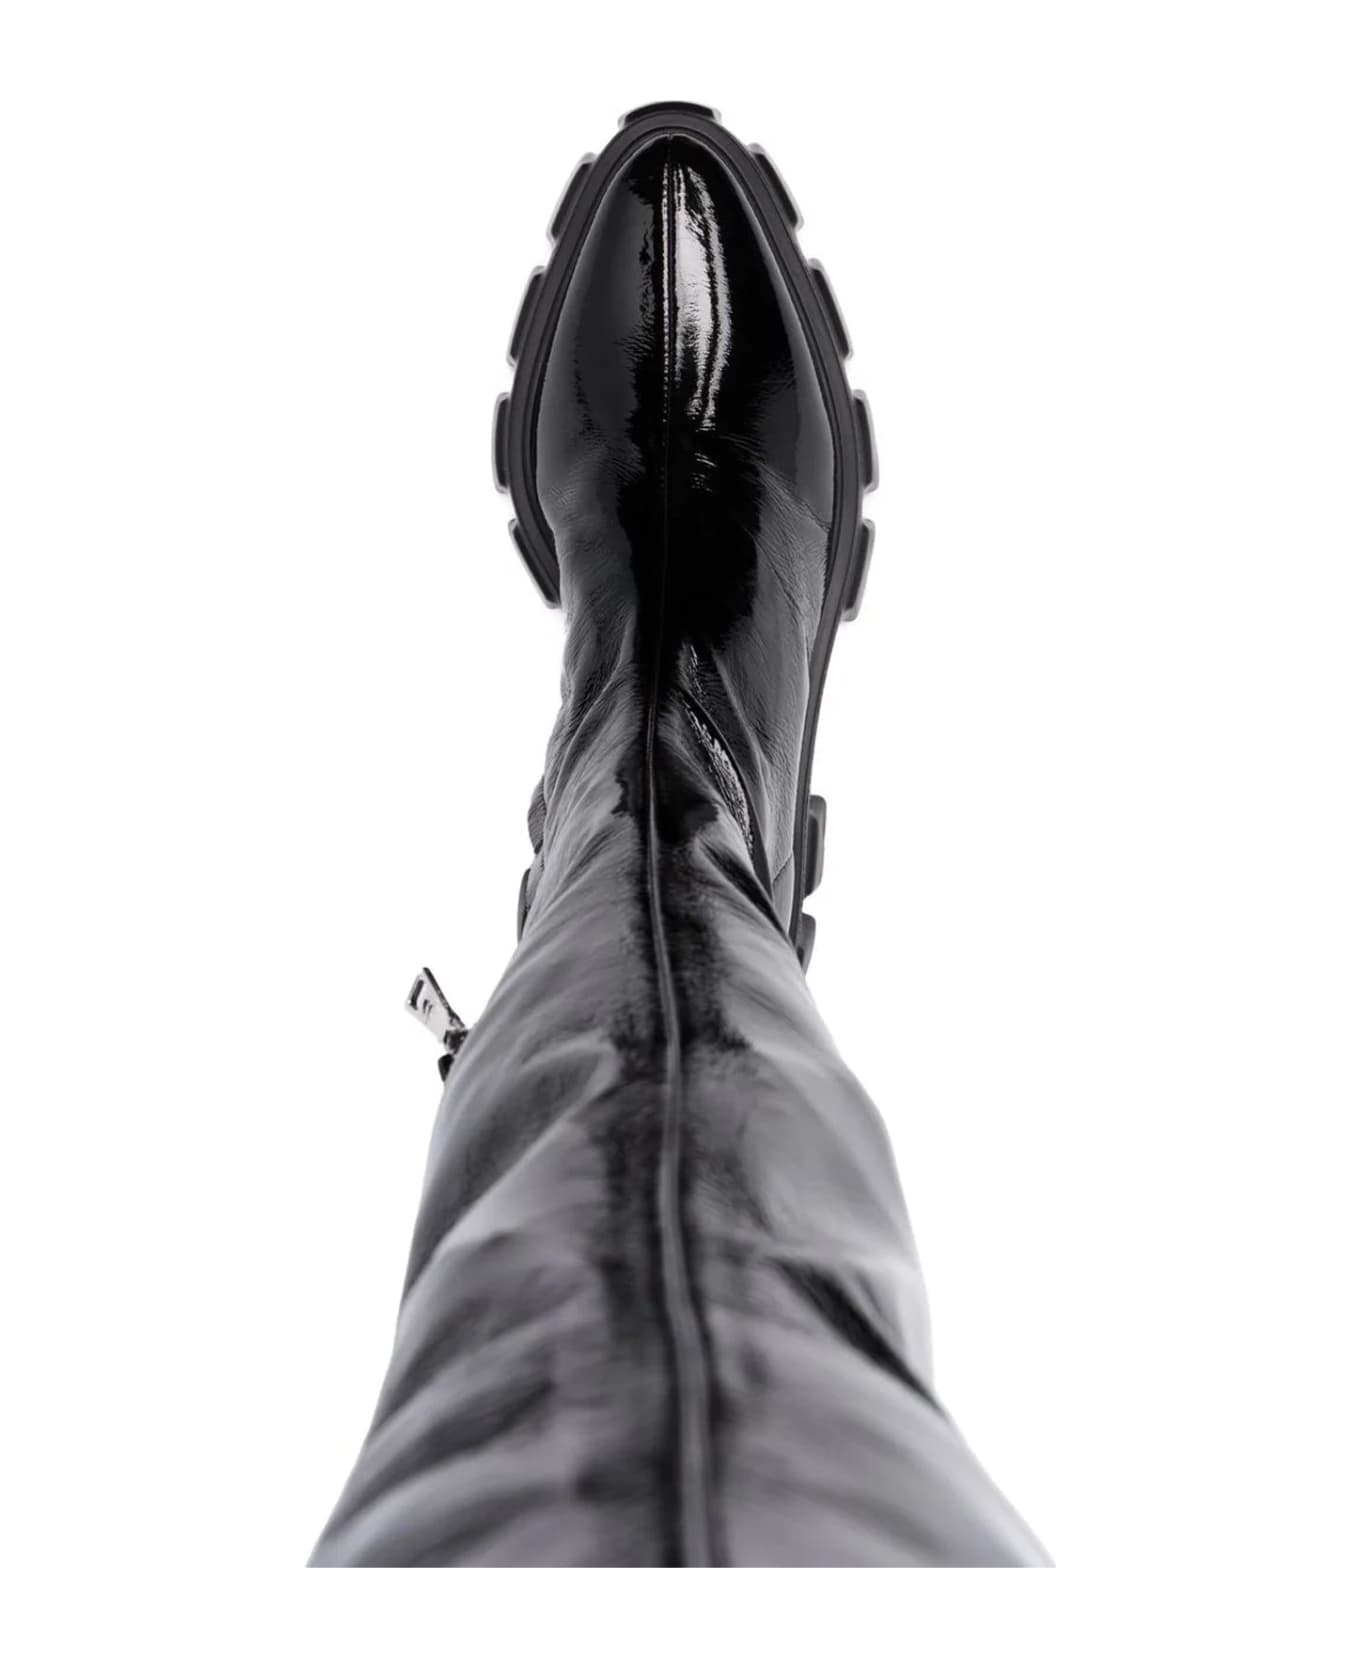 Prada Thigh-high Boots - Black